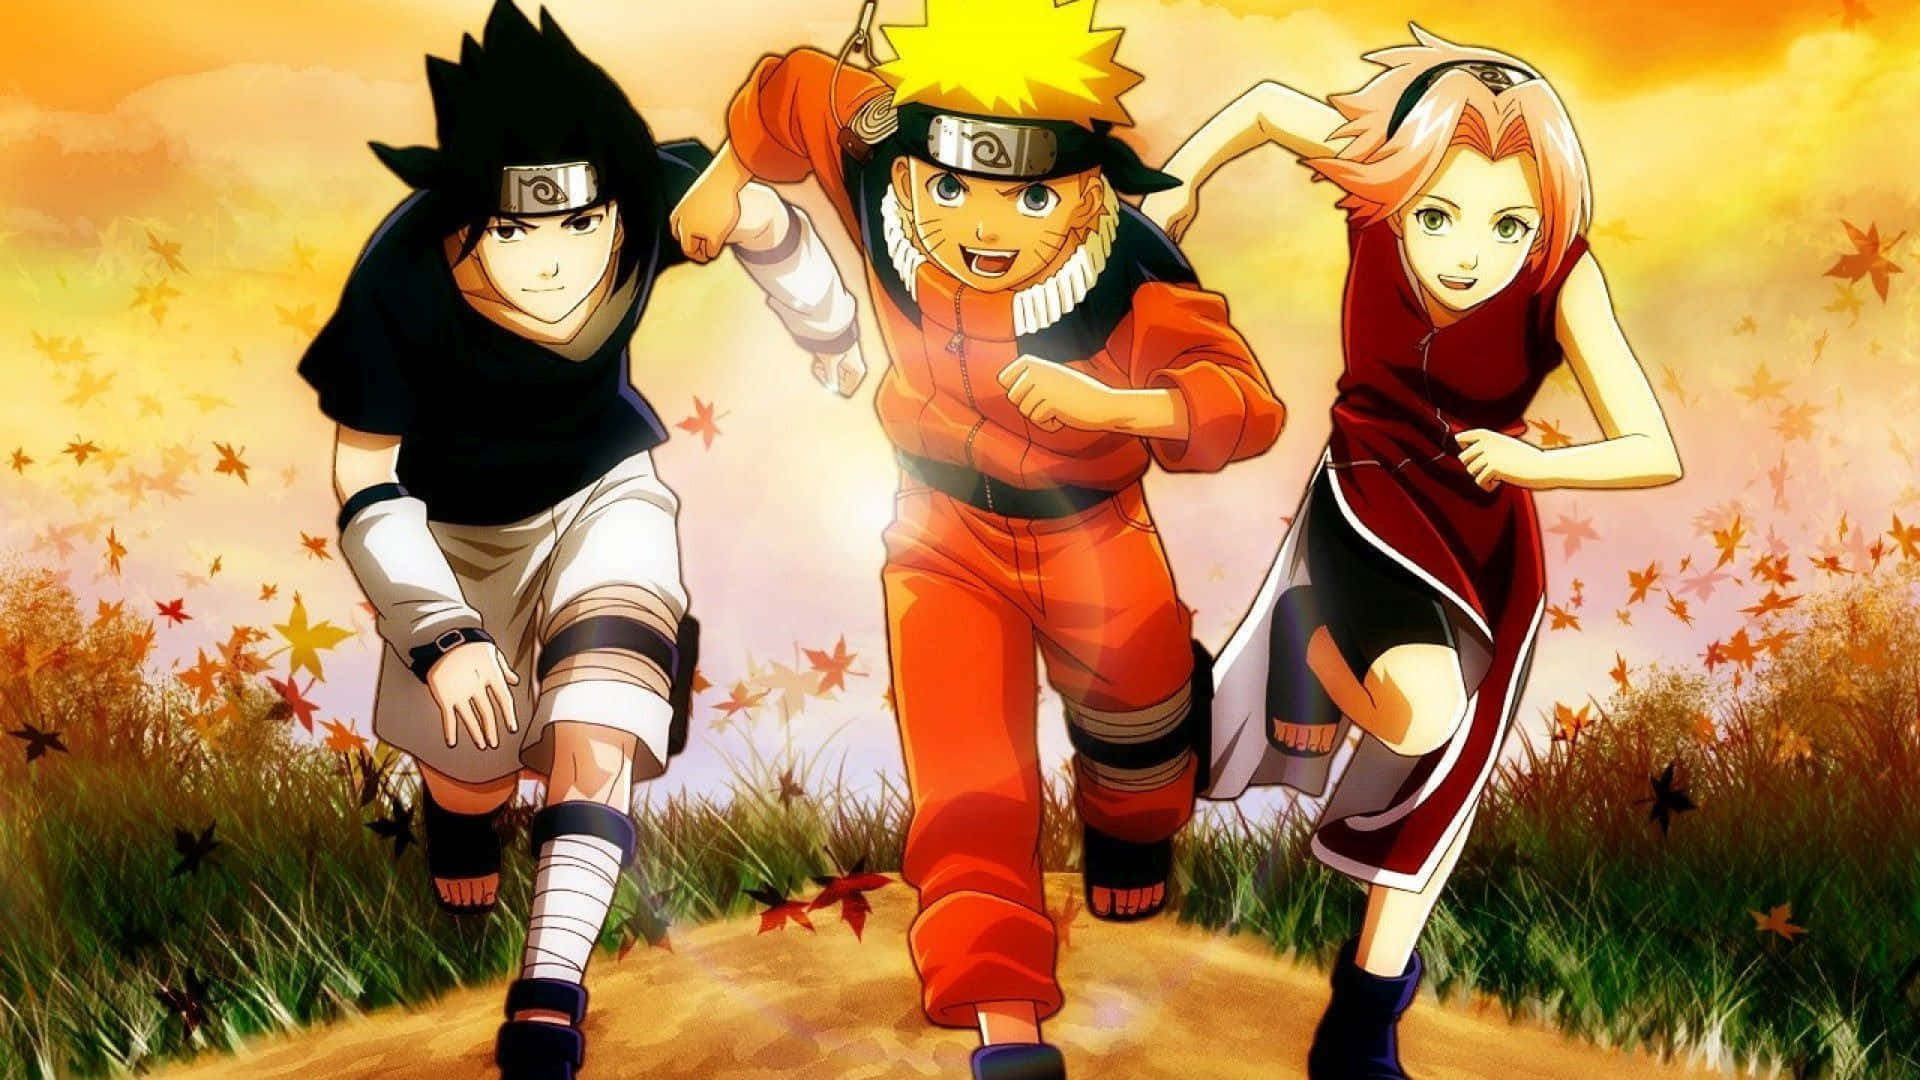 Team 7 Naruto Running In Grass Field Wallpaper